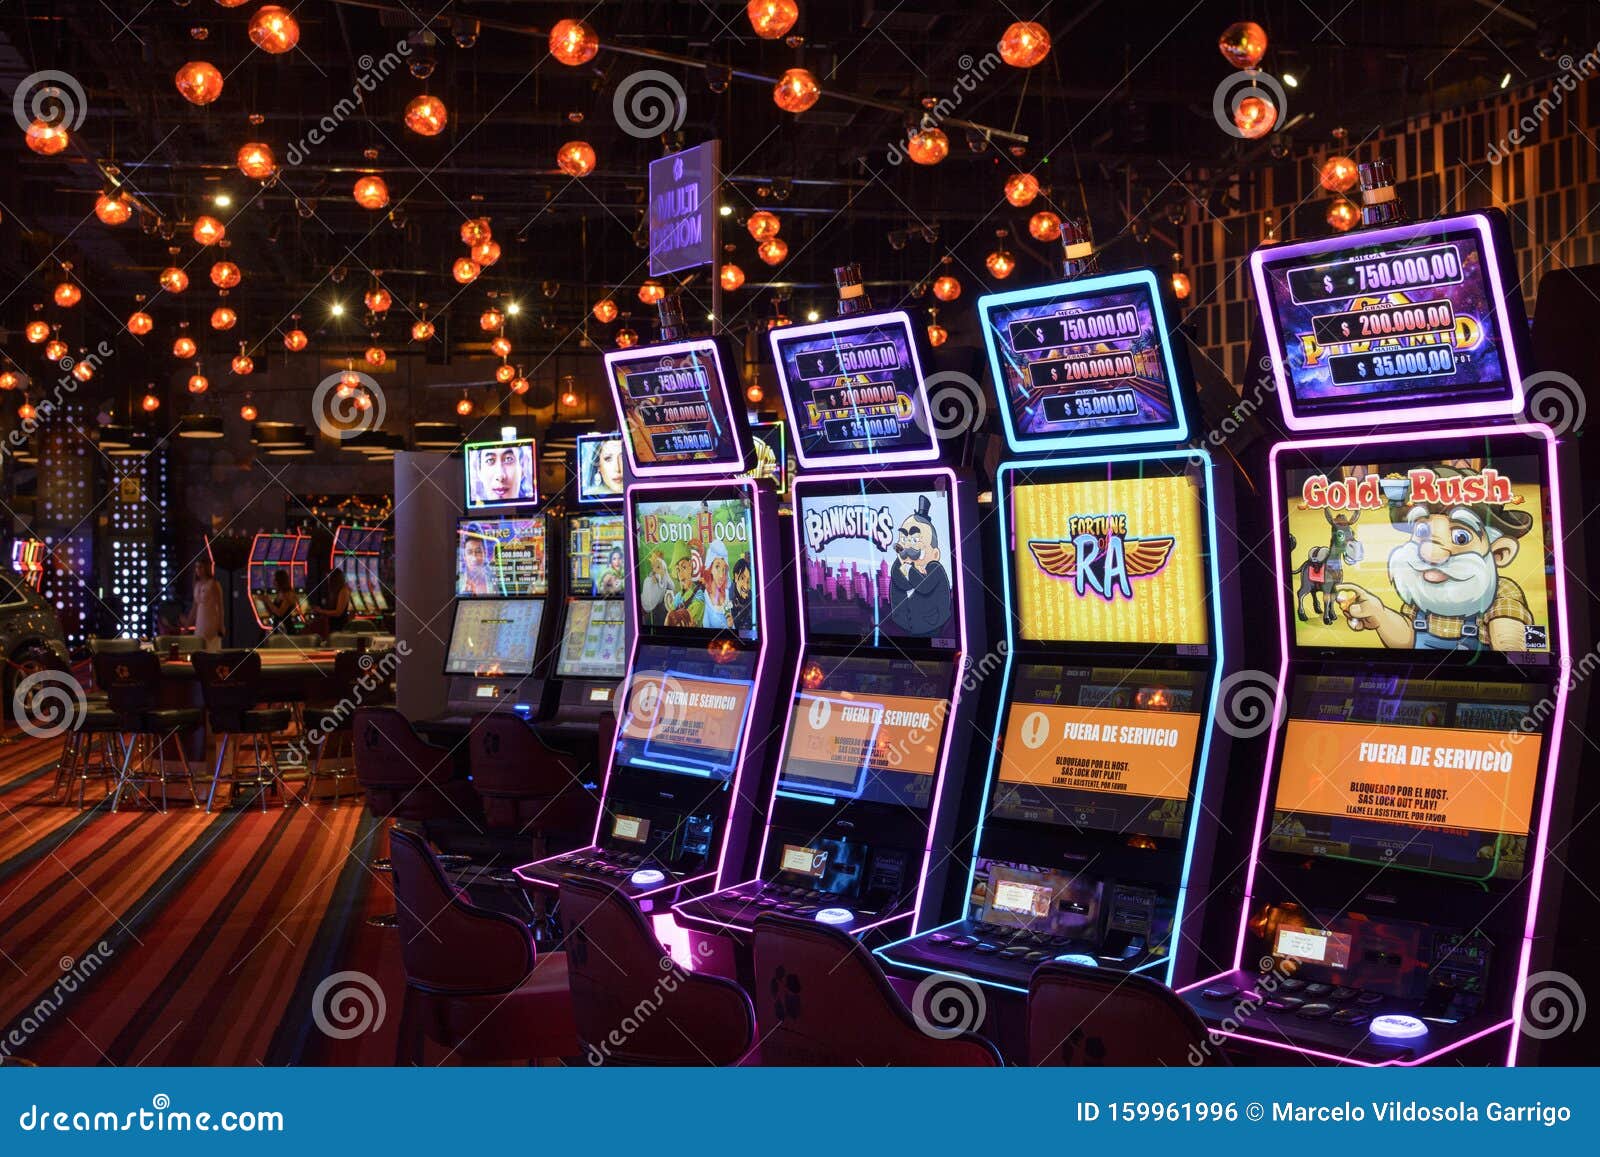 ¿Qué puede hacer con la Casino Virtual Chile ahora mismo?